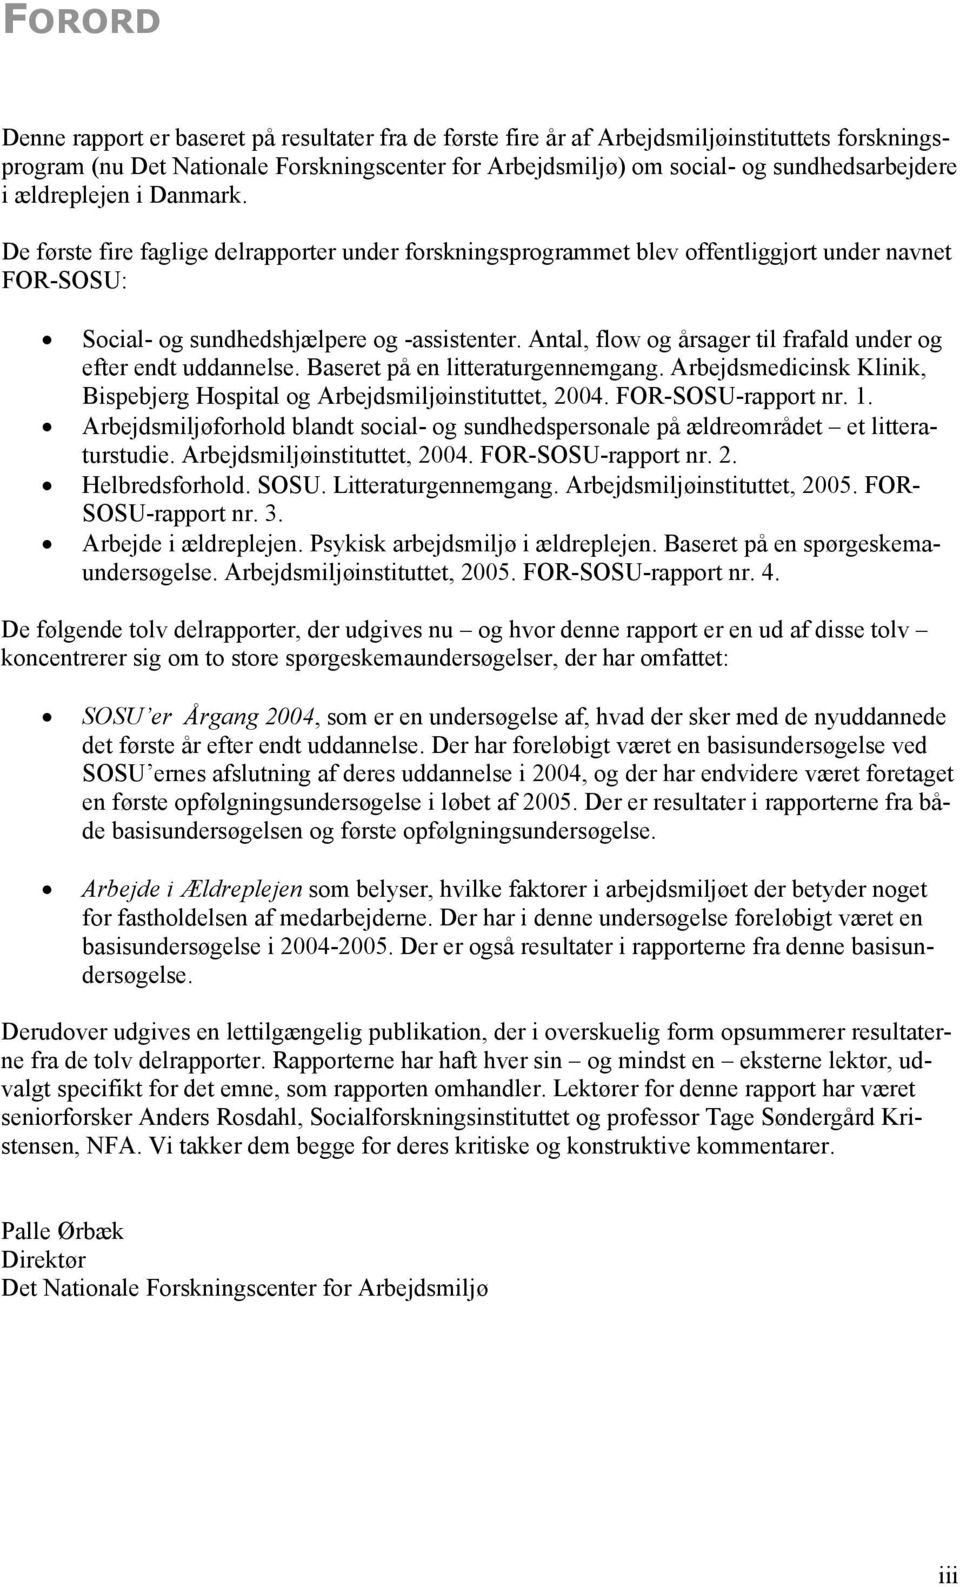 Antal, flow og årsager til frafald under og efter endt uddannelse. Baseret på en litteraturgennemgang. Arbejdsmedicinsk Klinik, Bispebjerg Hospital og Arbejdsmiljøinstituttet, 2004.